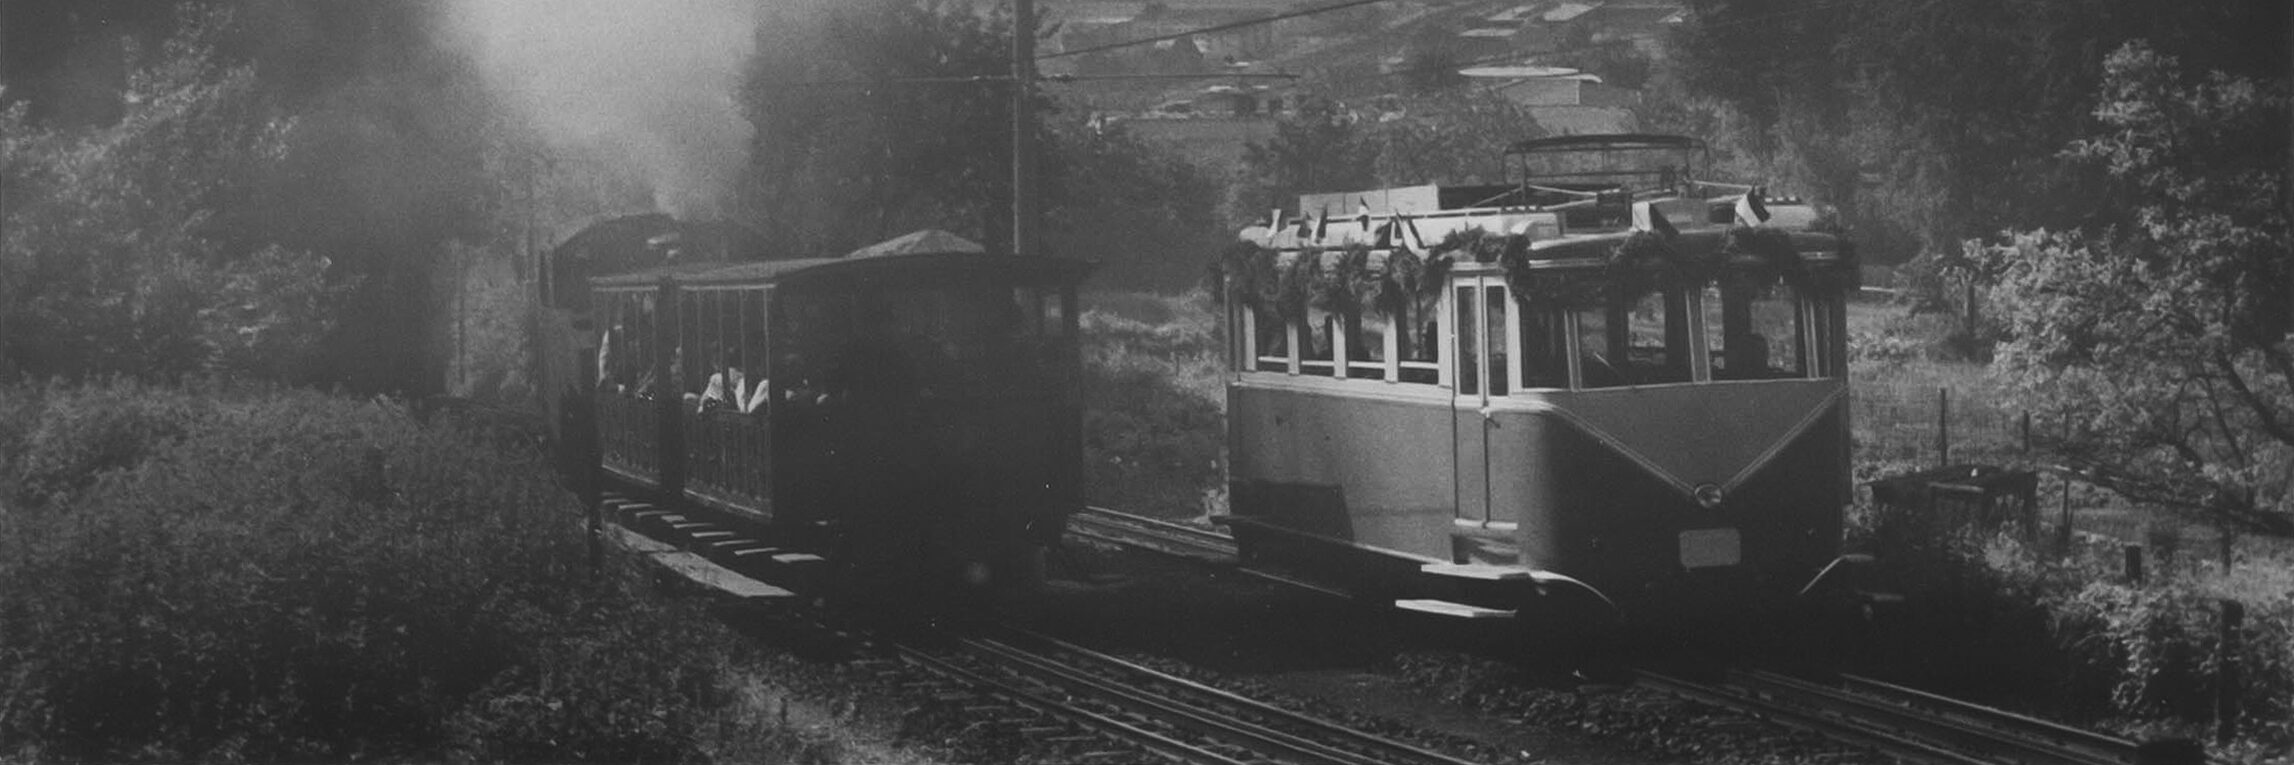 Erster elektrischer Triebwagen der Drachenfelsbahn